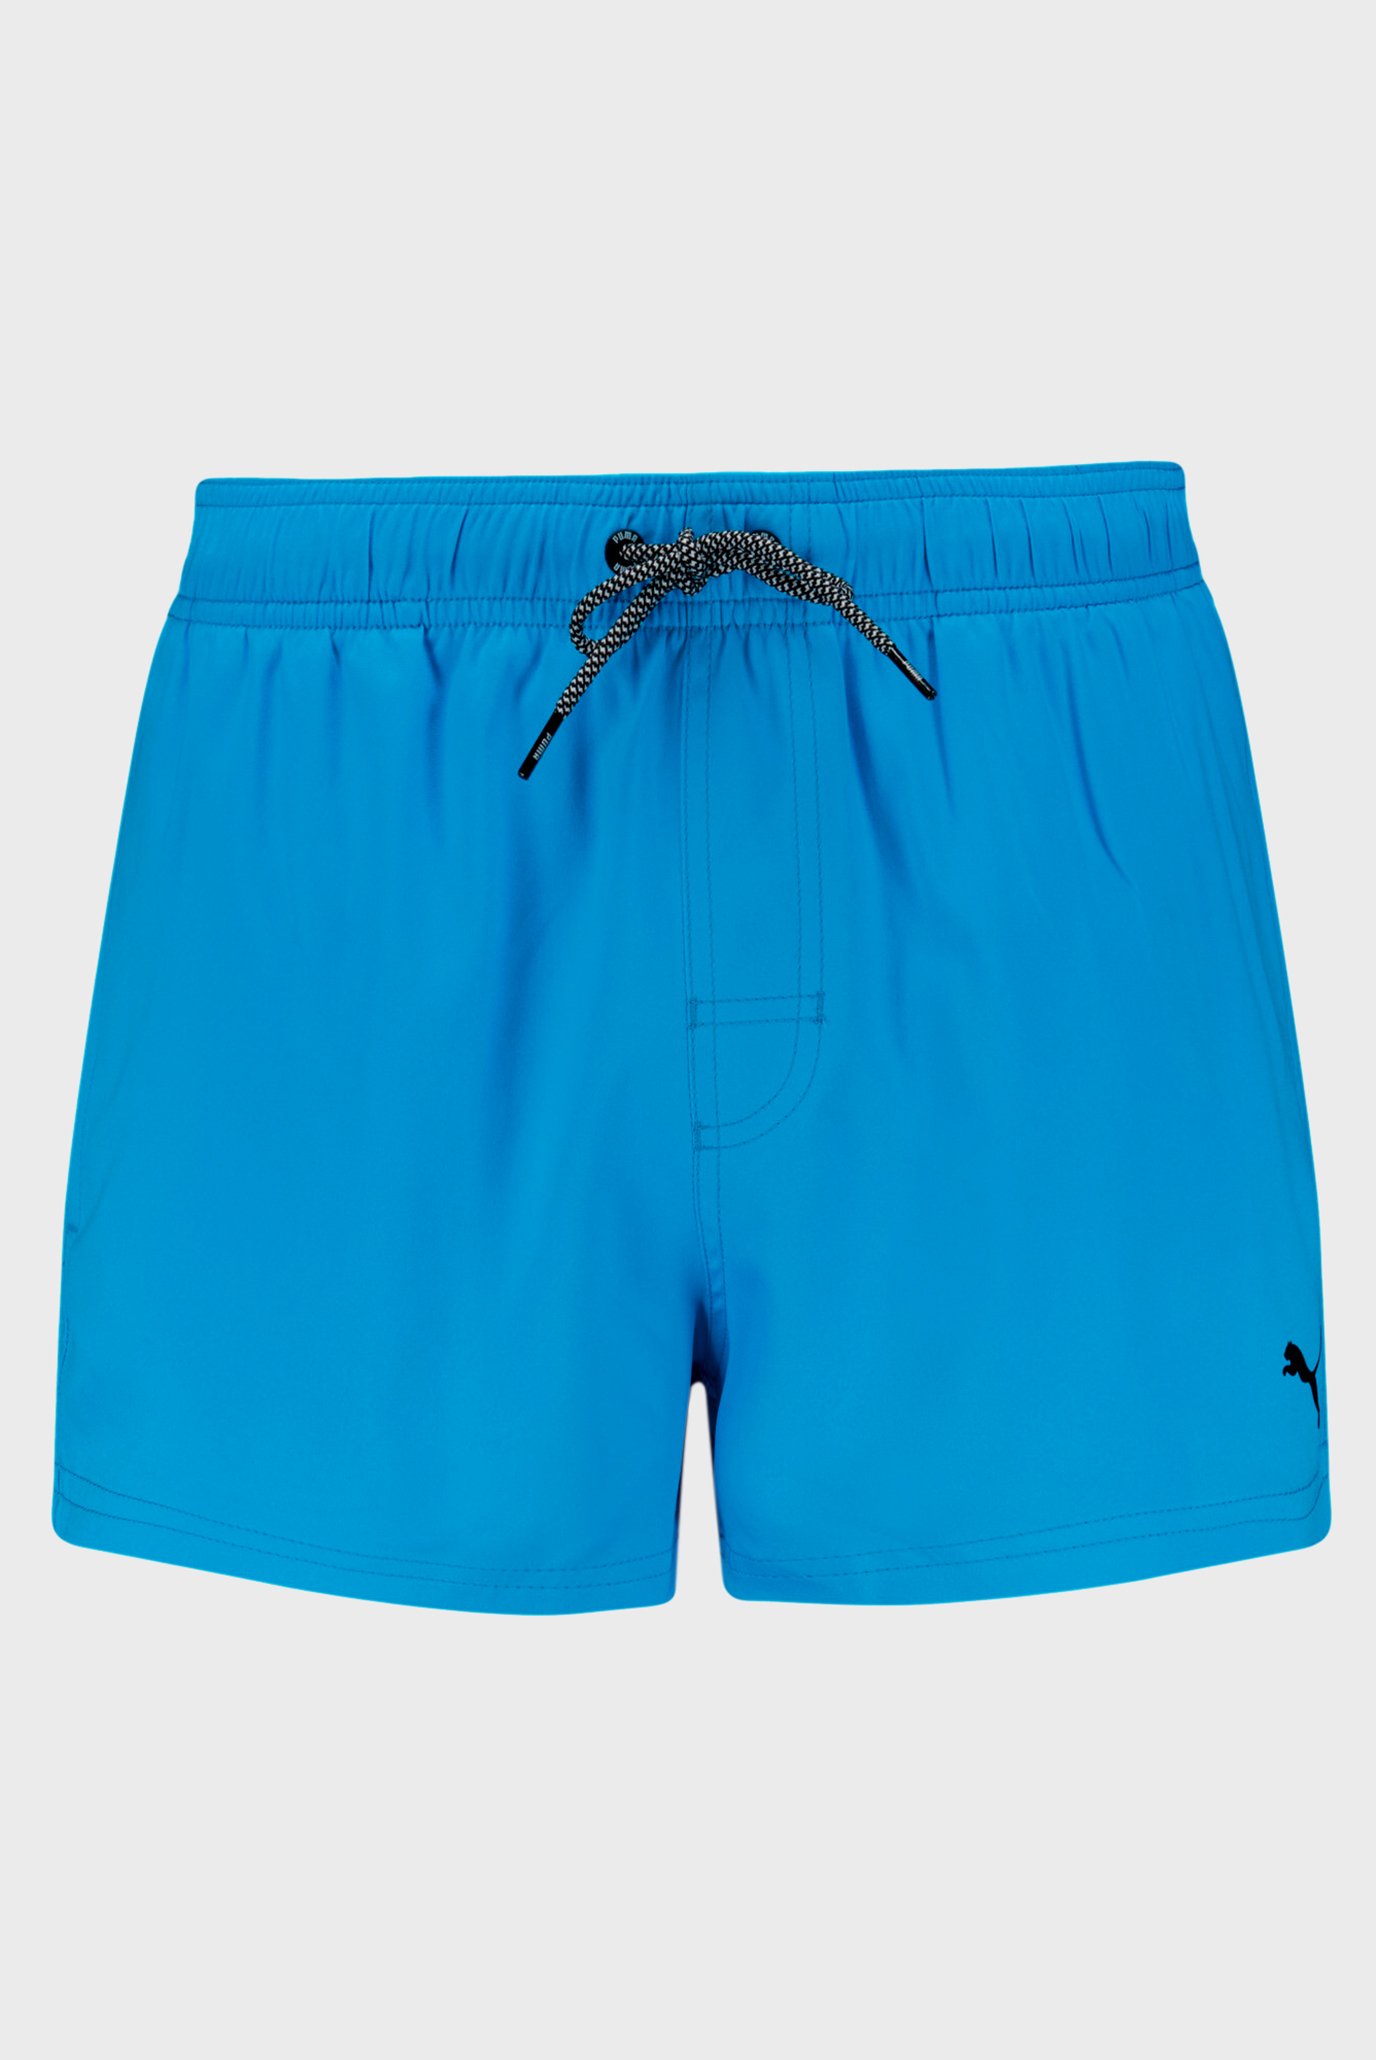 Мужские голубые плавательные шорты PUMA Swim Men Short Length S 1